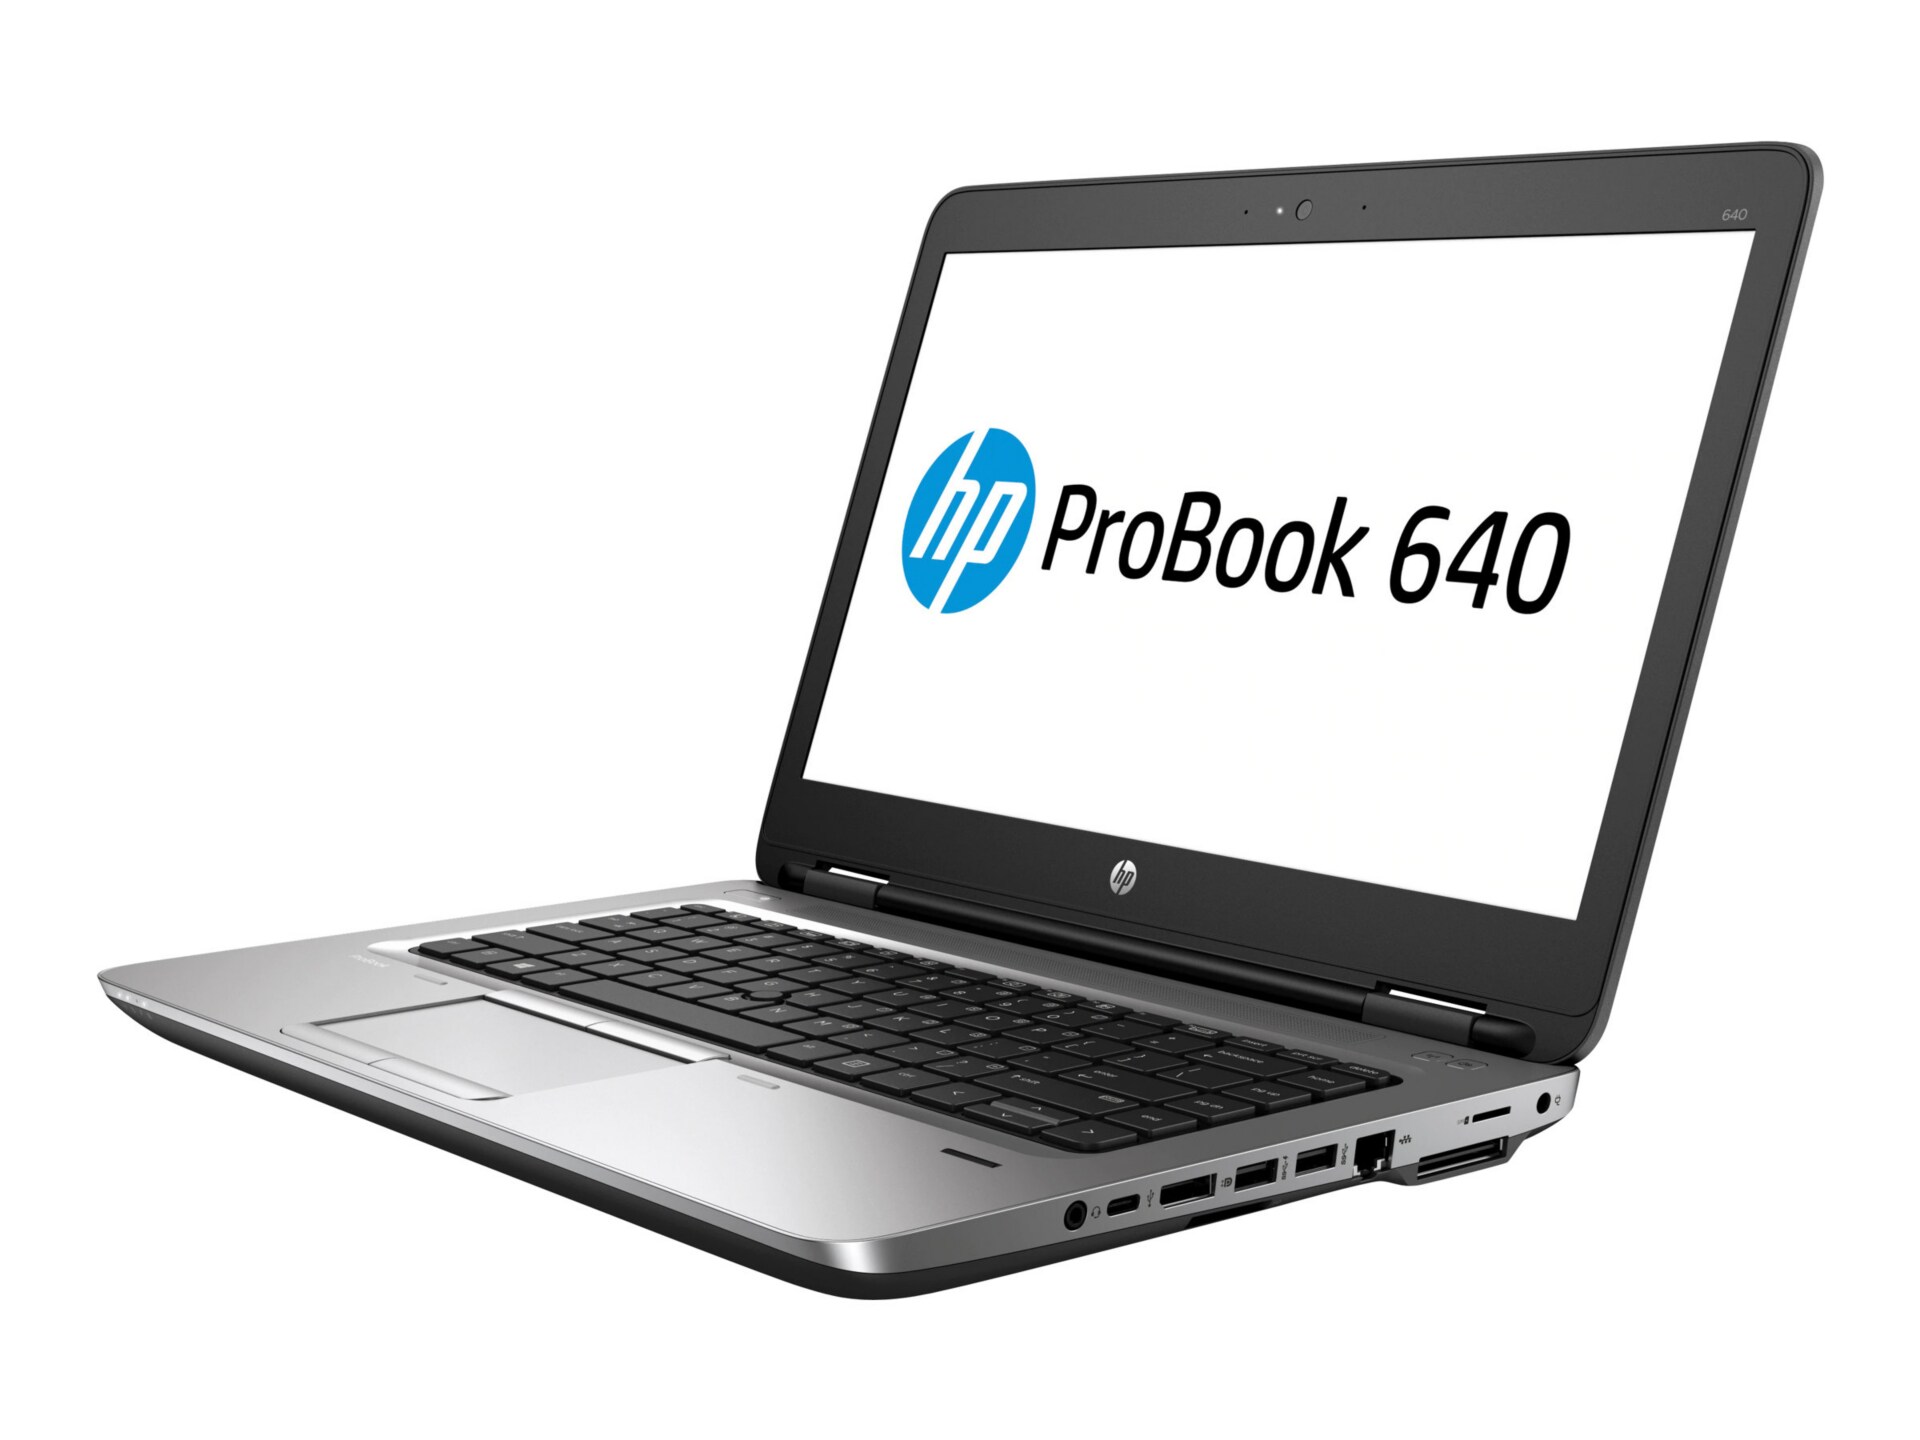 HP ProBook 640 G2 14 Notebook - Core i5 6200U 2.3GHz - 8GB RAM - 500GB HD